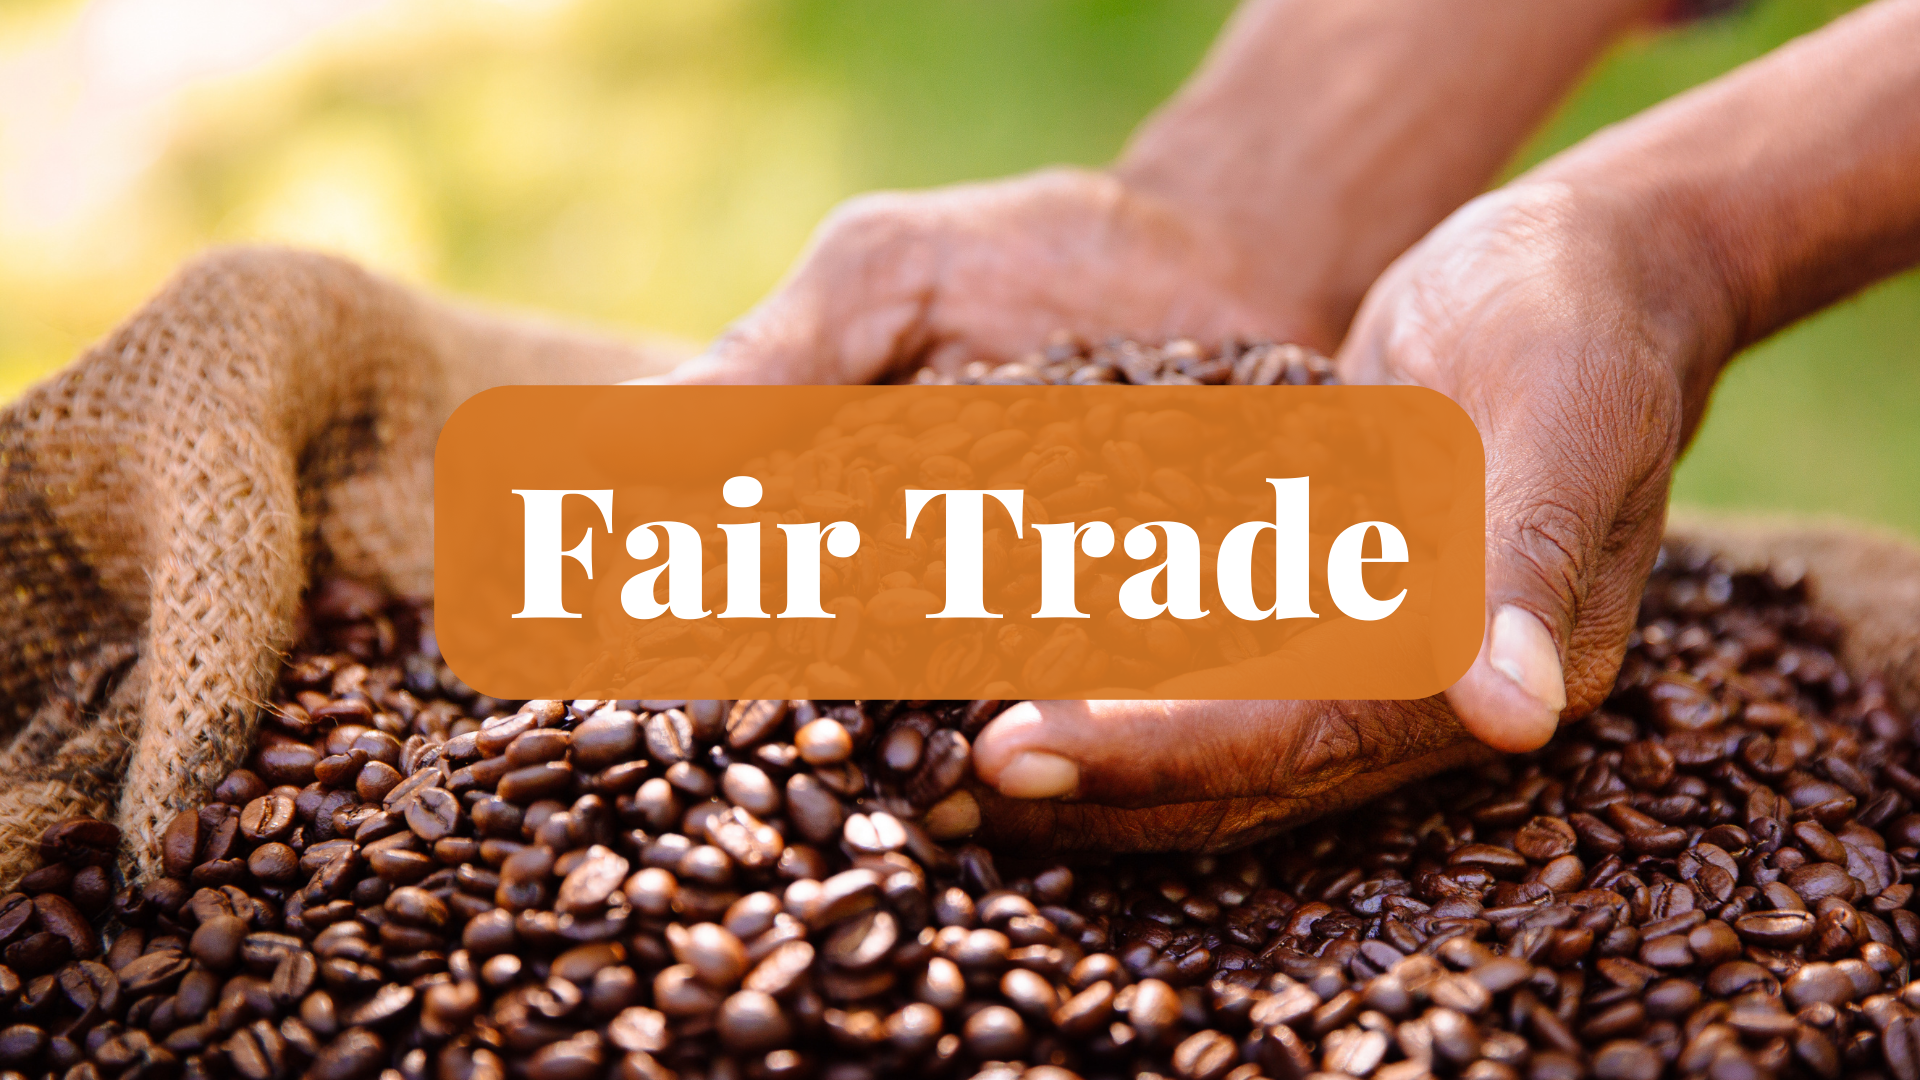 Fair Trade workshop